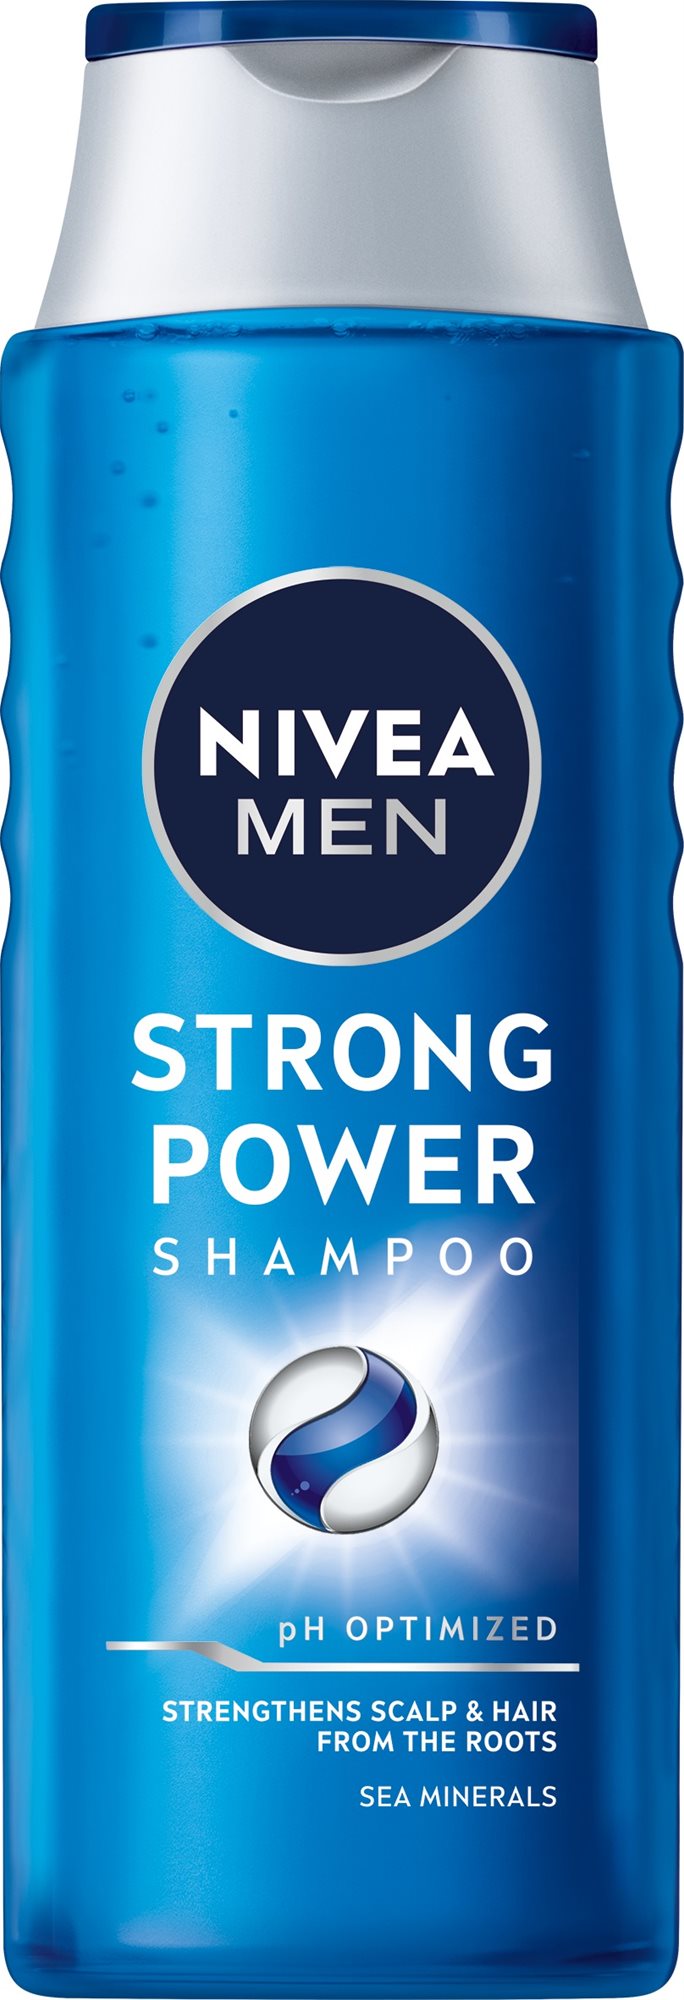 NIVEA MEN Strong Power sampon 400 ml